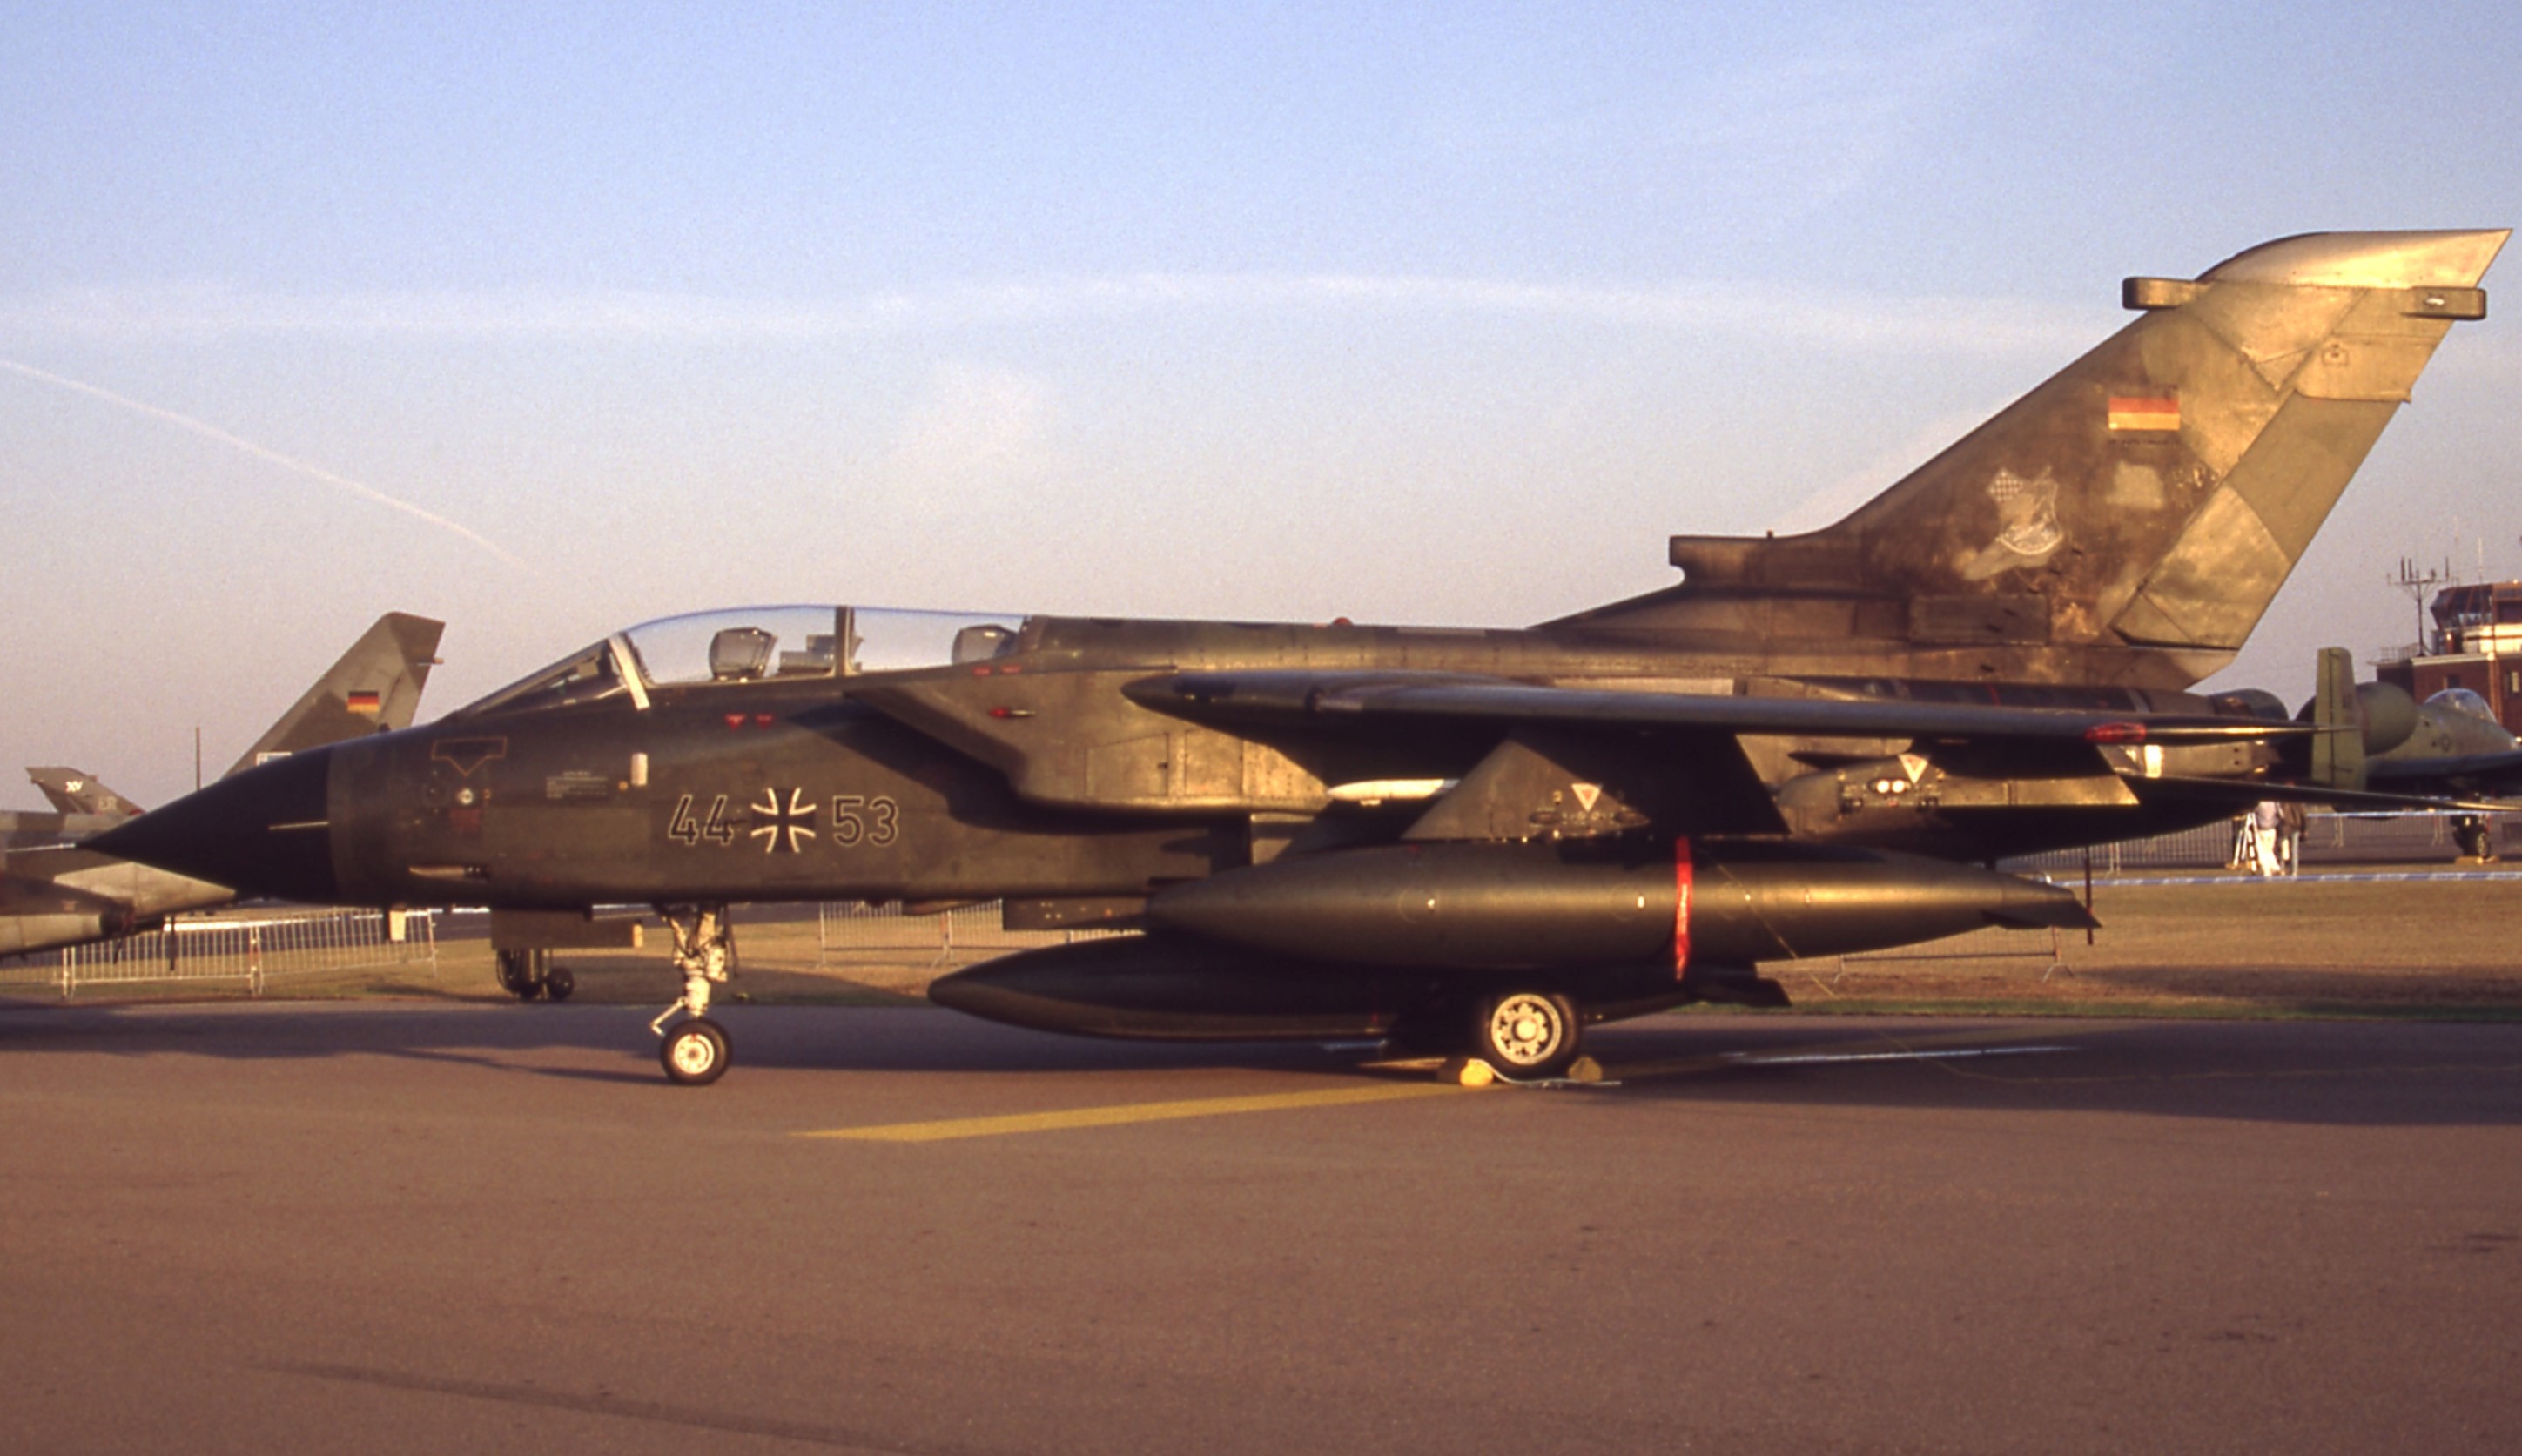 44+53/44+53 Preserved Panavia Tornado Airframe Information - AVSpotters.com